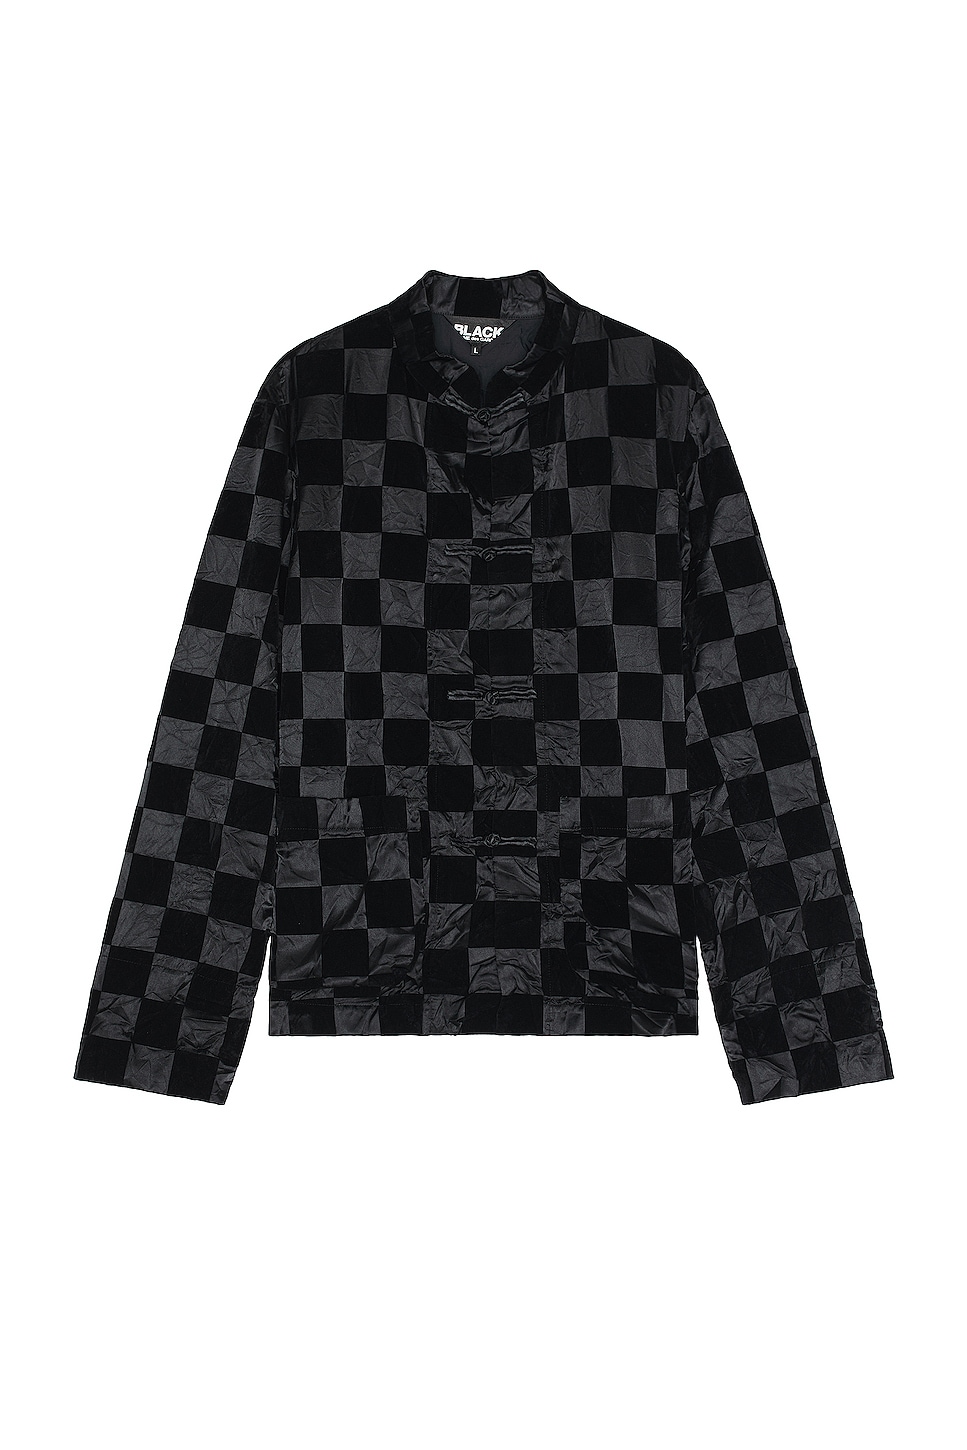 Image 1 of COMME des GARCONS BLACK Checkered Flock Jacket in Black & Black